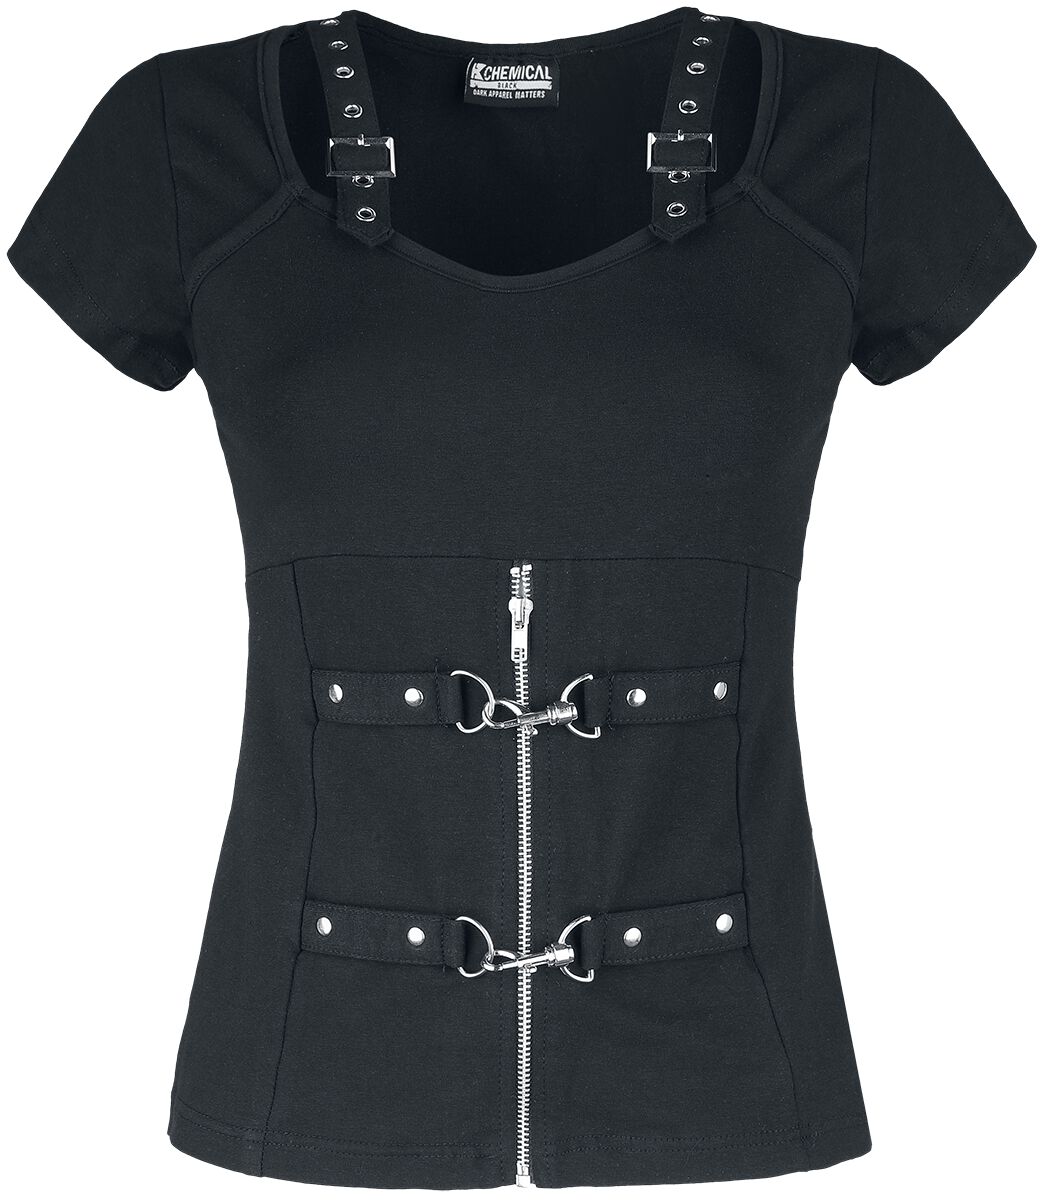 Chemical Black - Gothic T-Shirt - Maniacal Top - XS bis XXL - für Damen - Größe S - schwarz